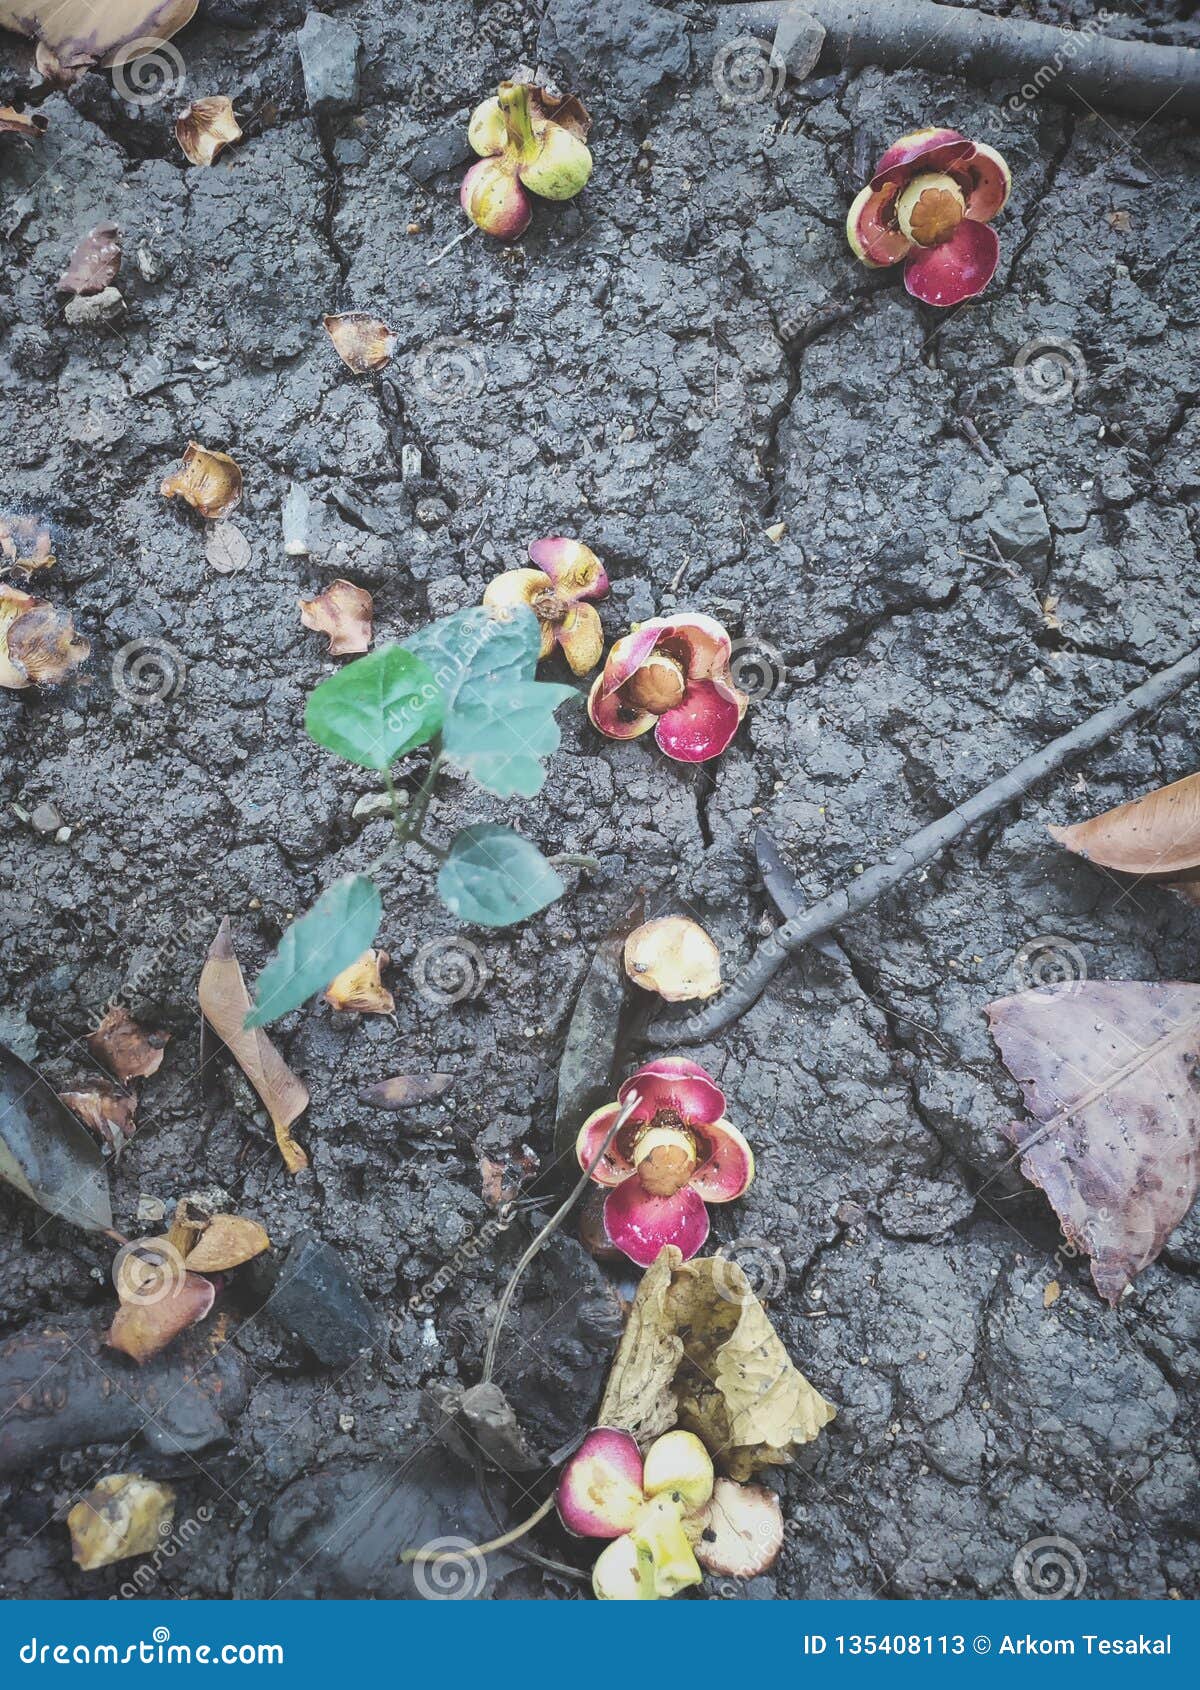 fallen flower on the earth